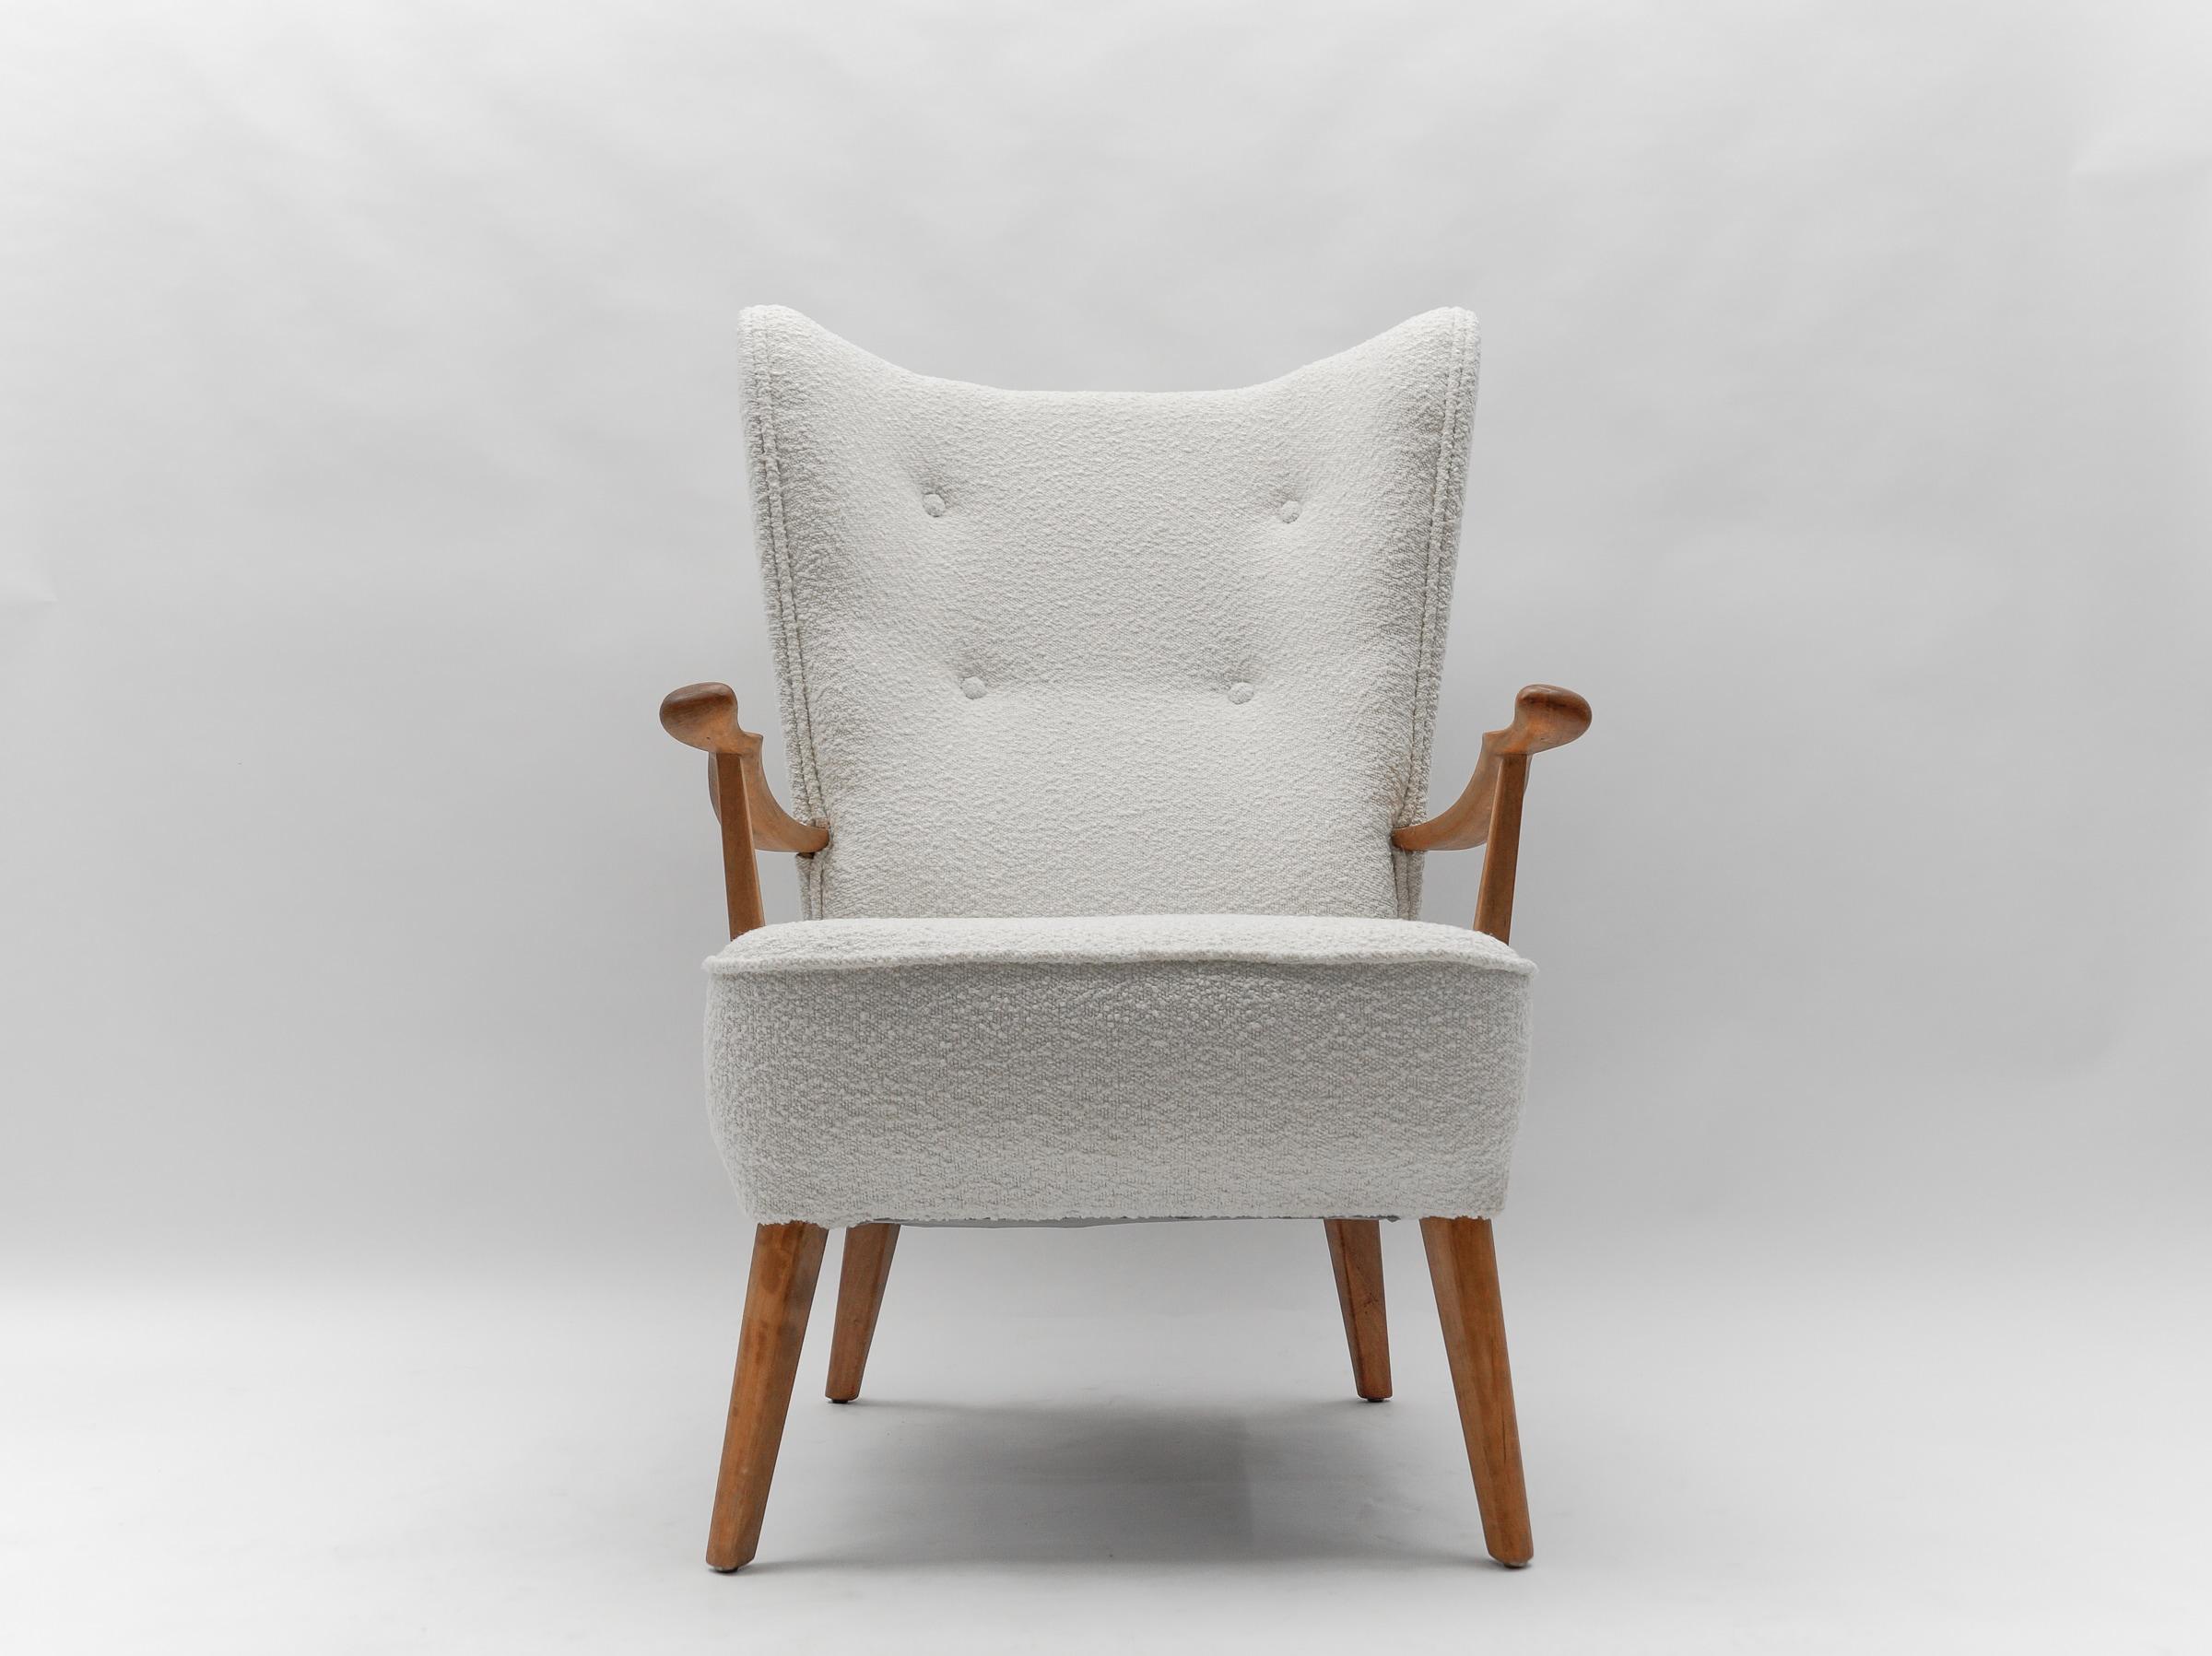 Superbe fauteuil.

Nouvelle sellerie en tissu bouclé blanc.
